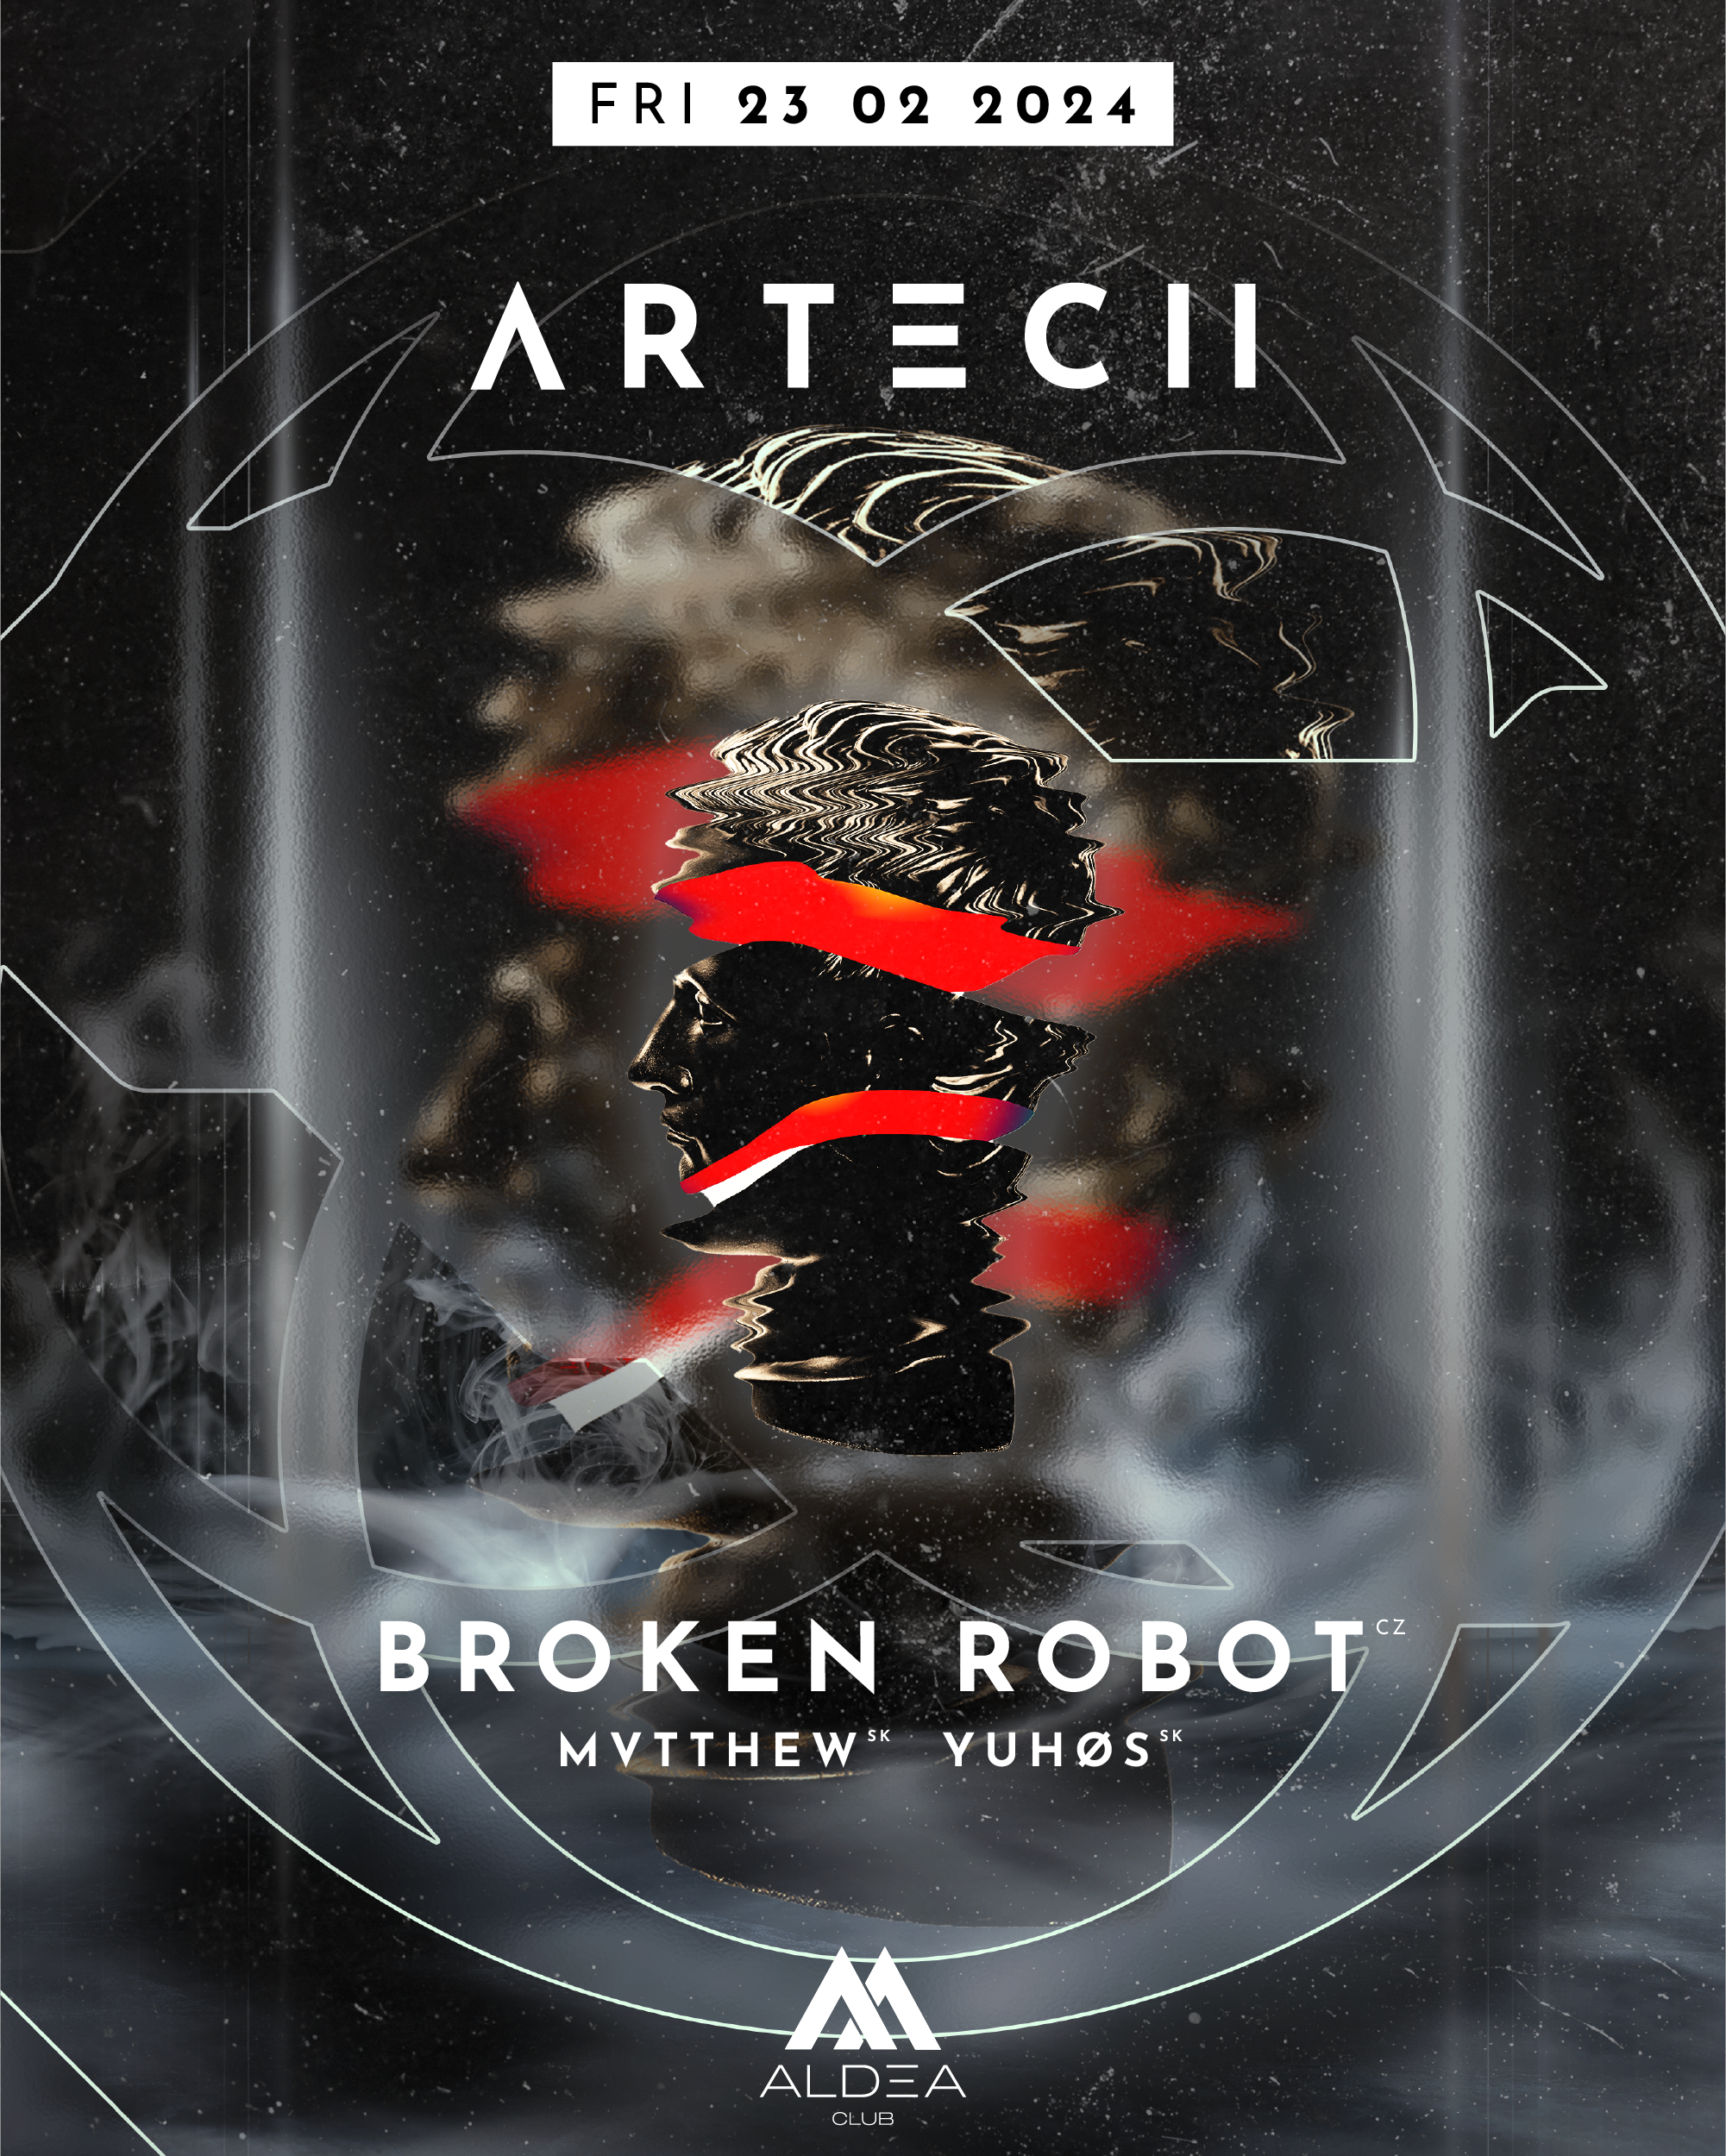 ARTECH w. Broken Robot, Mvtthew & Yuhøs - Página frontal